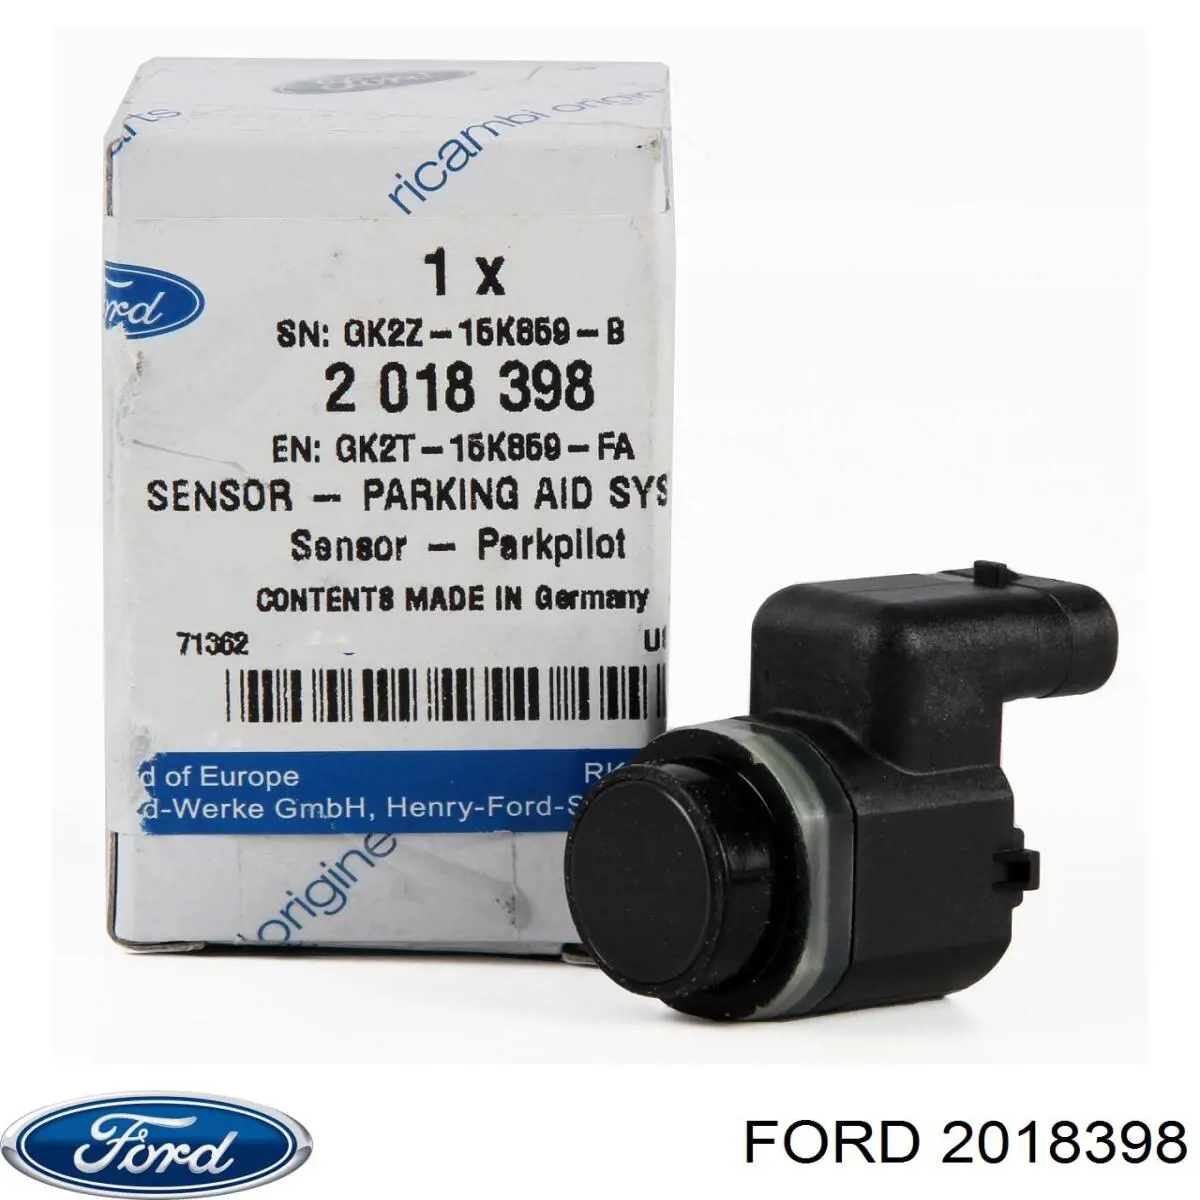 2018398 Ford sensor dianteiro de sinalização de estacionamento (sensor de estacionamento)